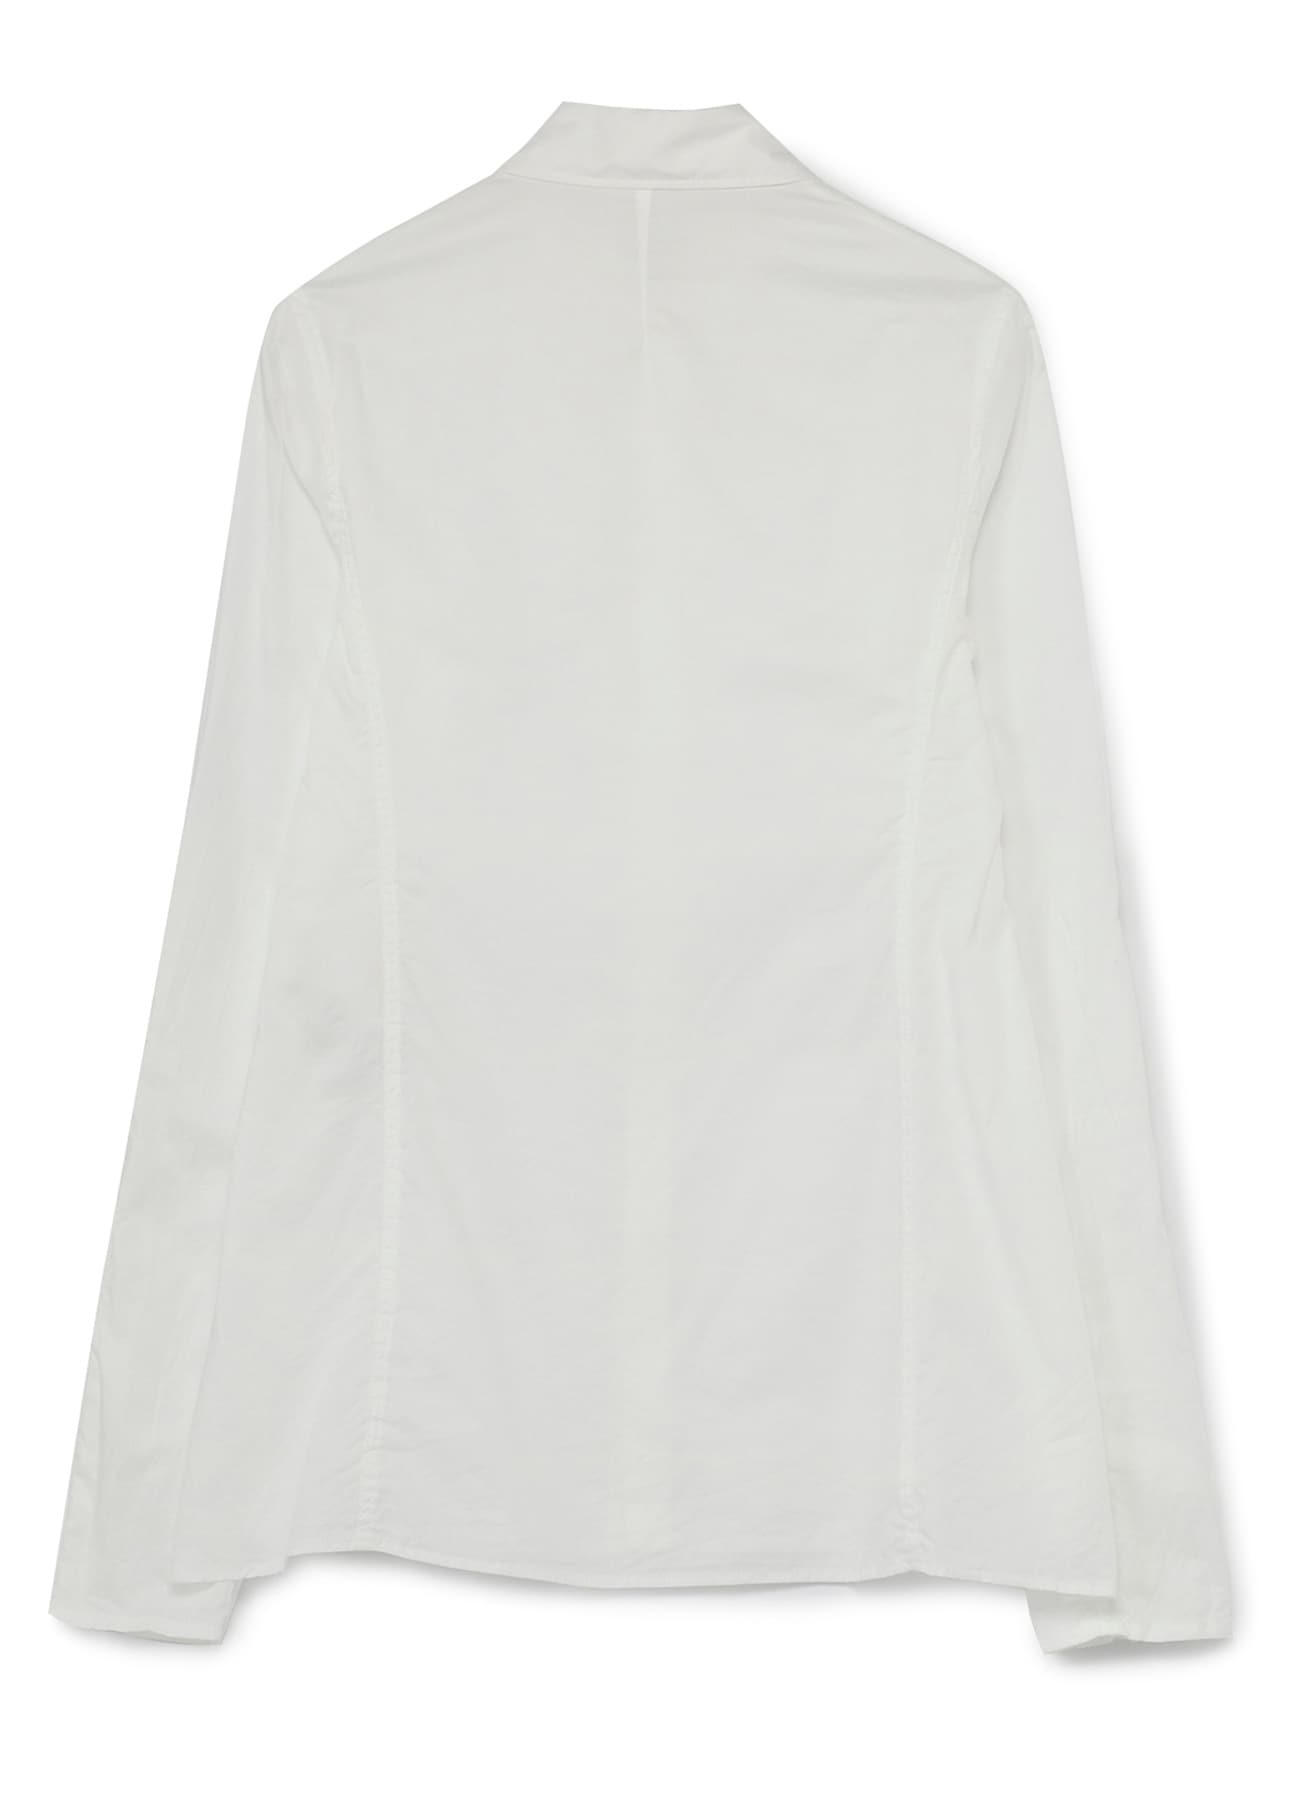 Compact Viyella Long Sleeve Shirt